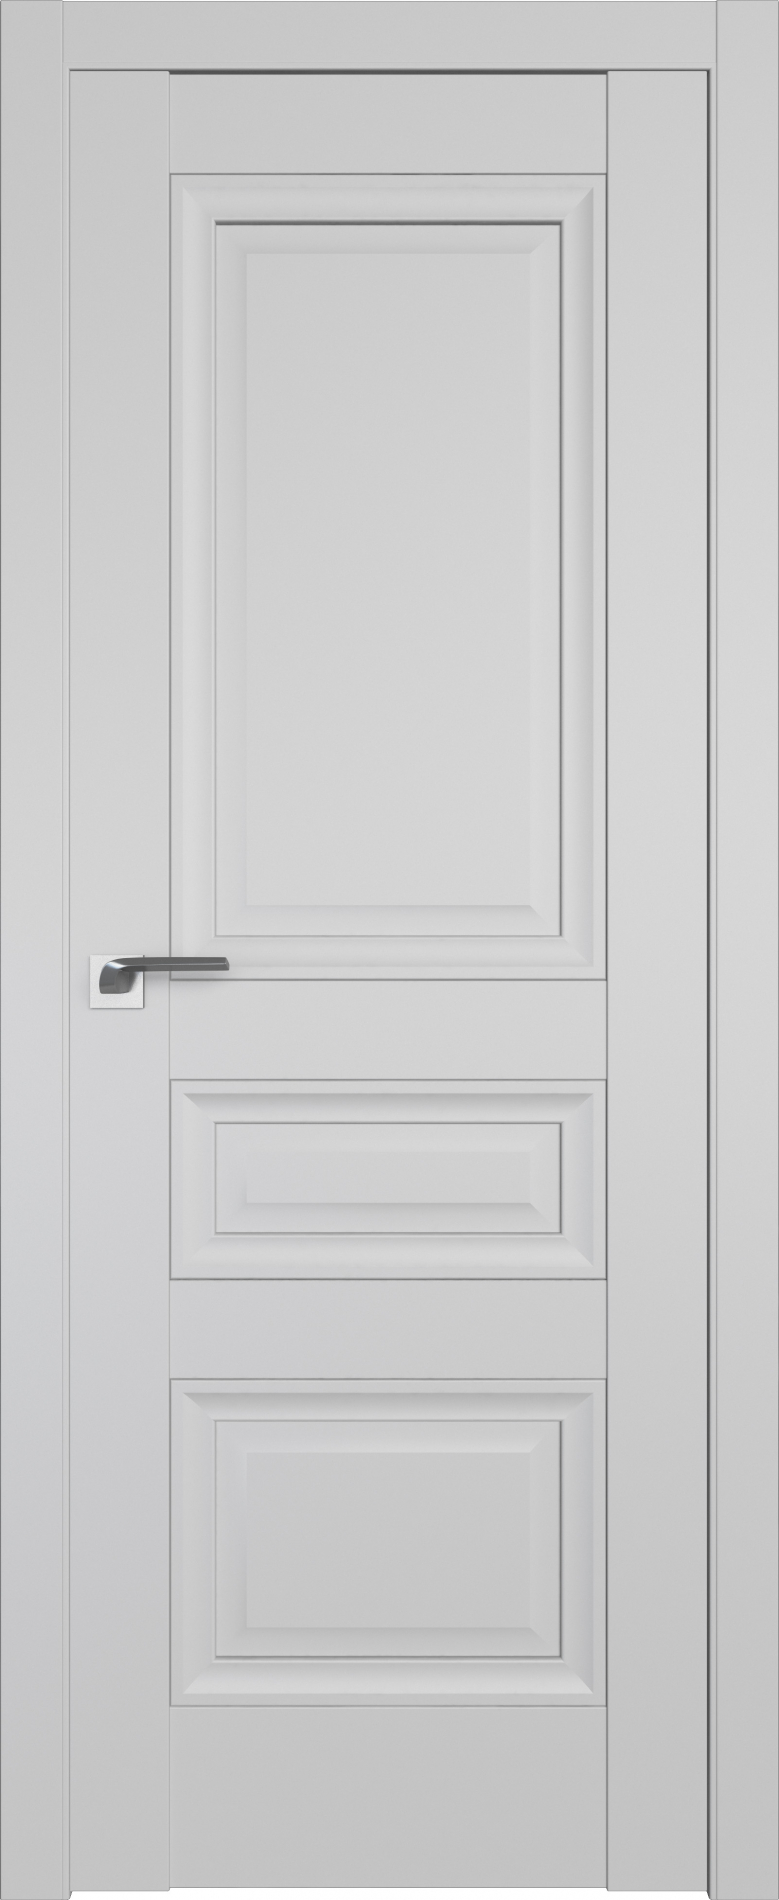 межкомнатные двери  Profil Doors 2.114U манхэттен